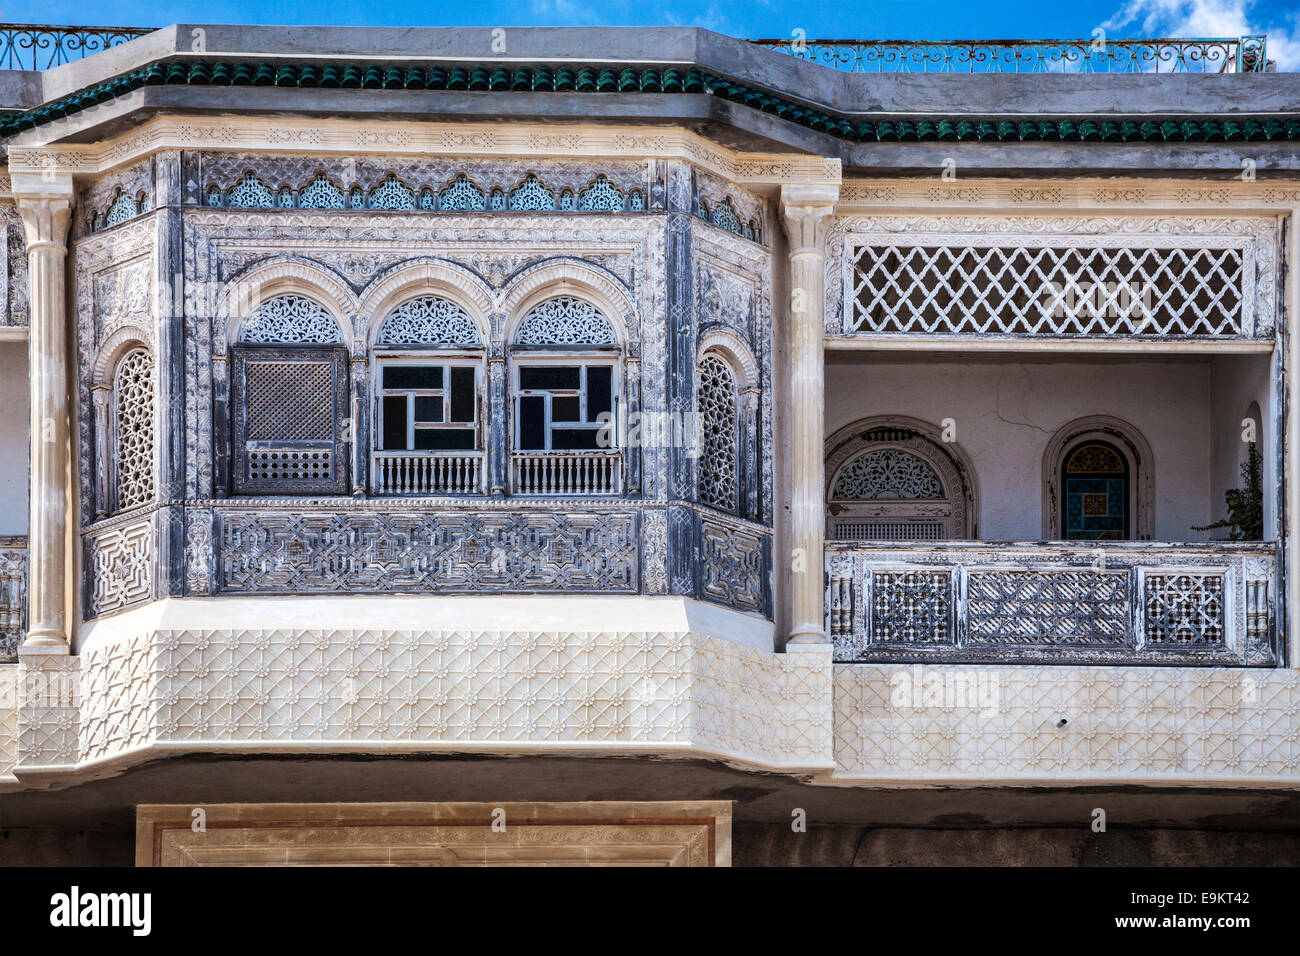 Façades en stuc sculpté orné d'une maison arabe à Tunis, Tunisie. Banque D'Images